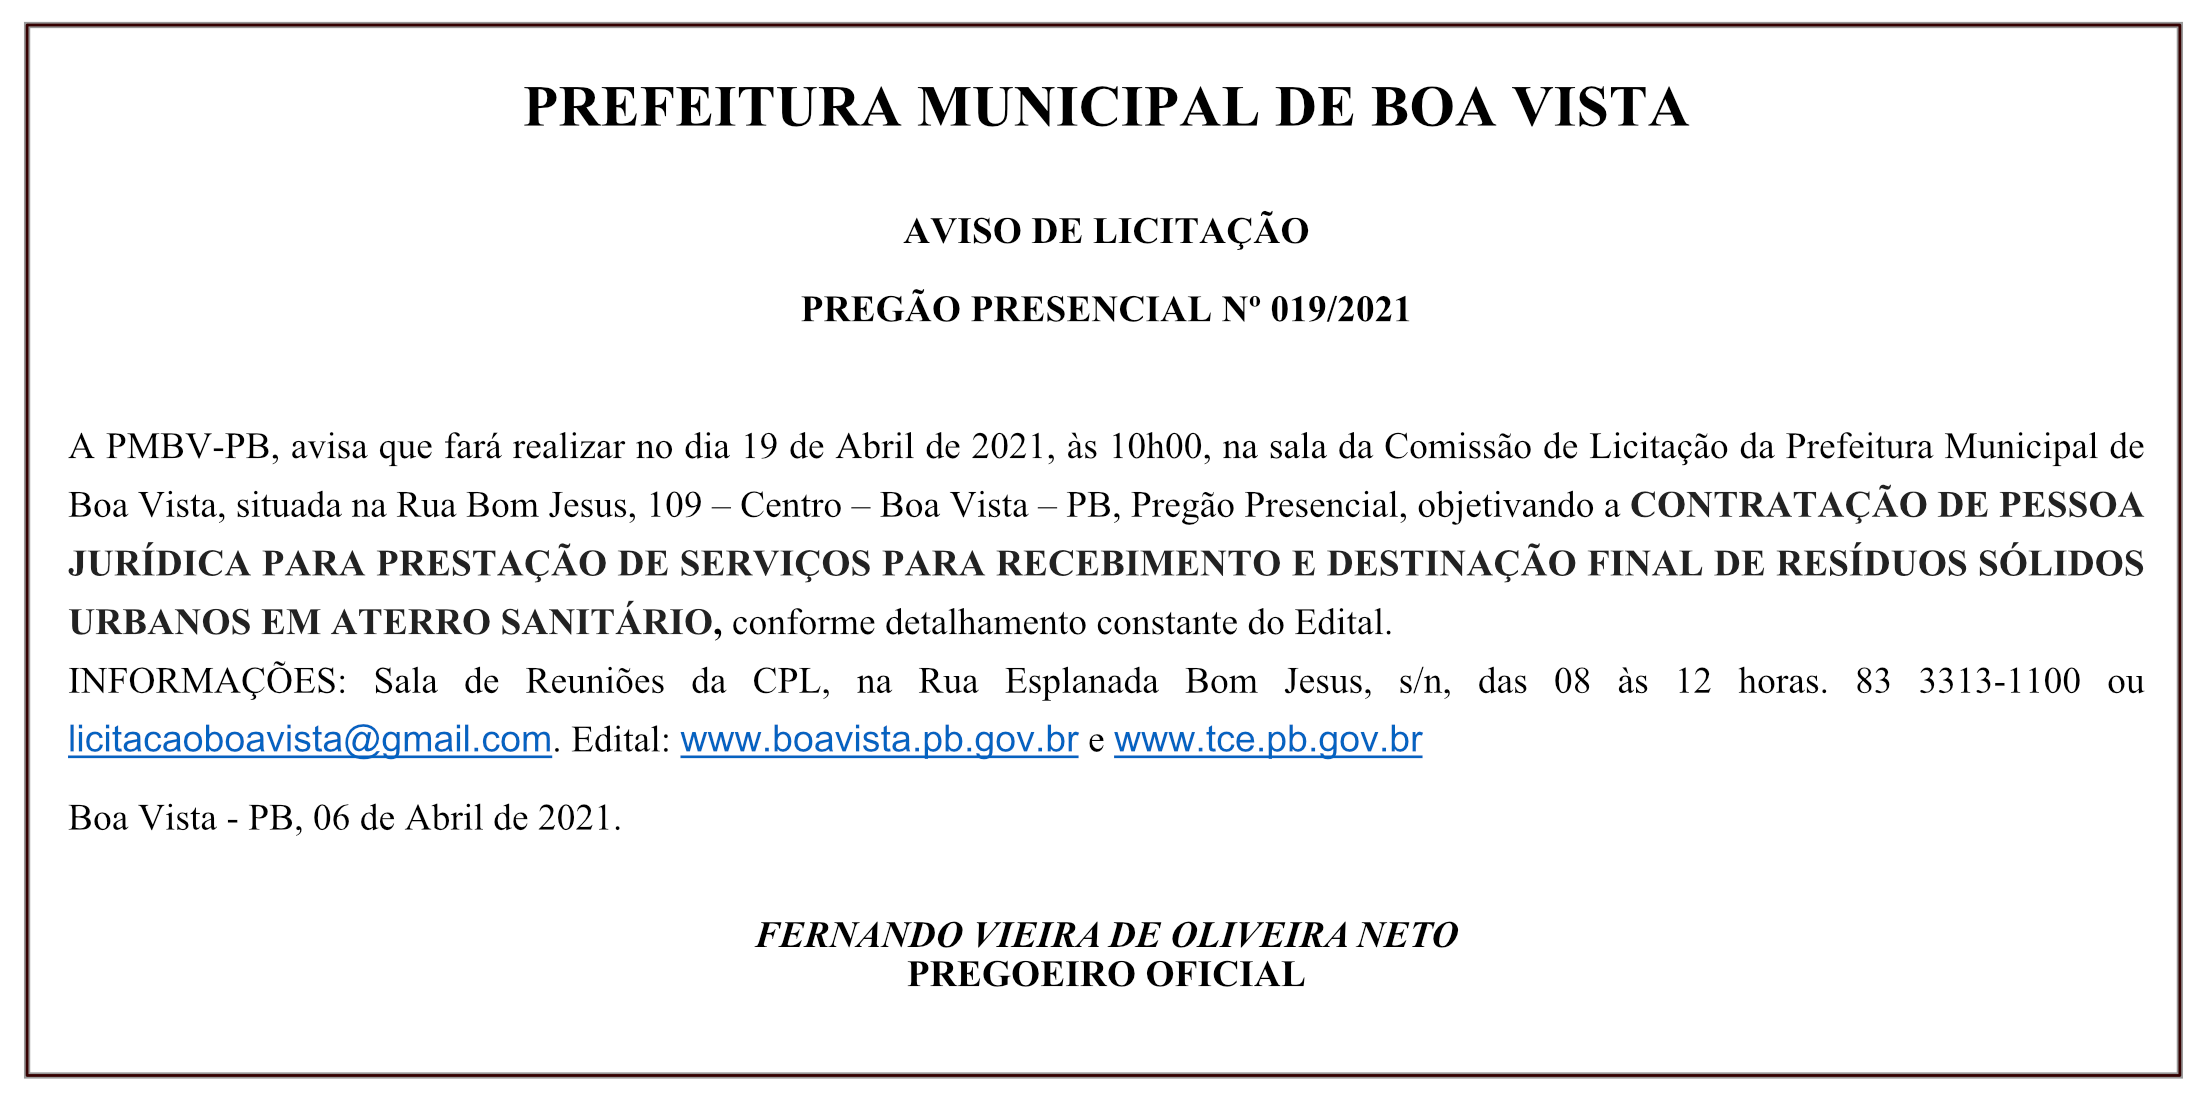 PREFEITURA MUNICIPAL DE BOA VISTA – AVISO DE LICITAÇÃO – PREGÃO PRESENCIAL Nº 019/2021